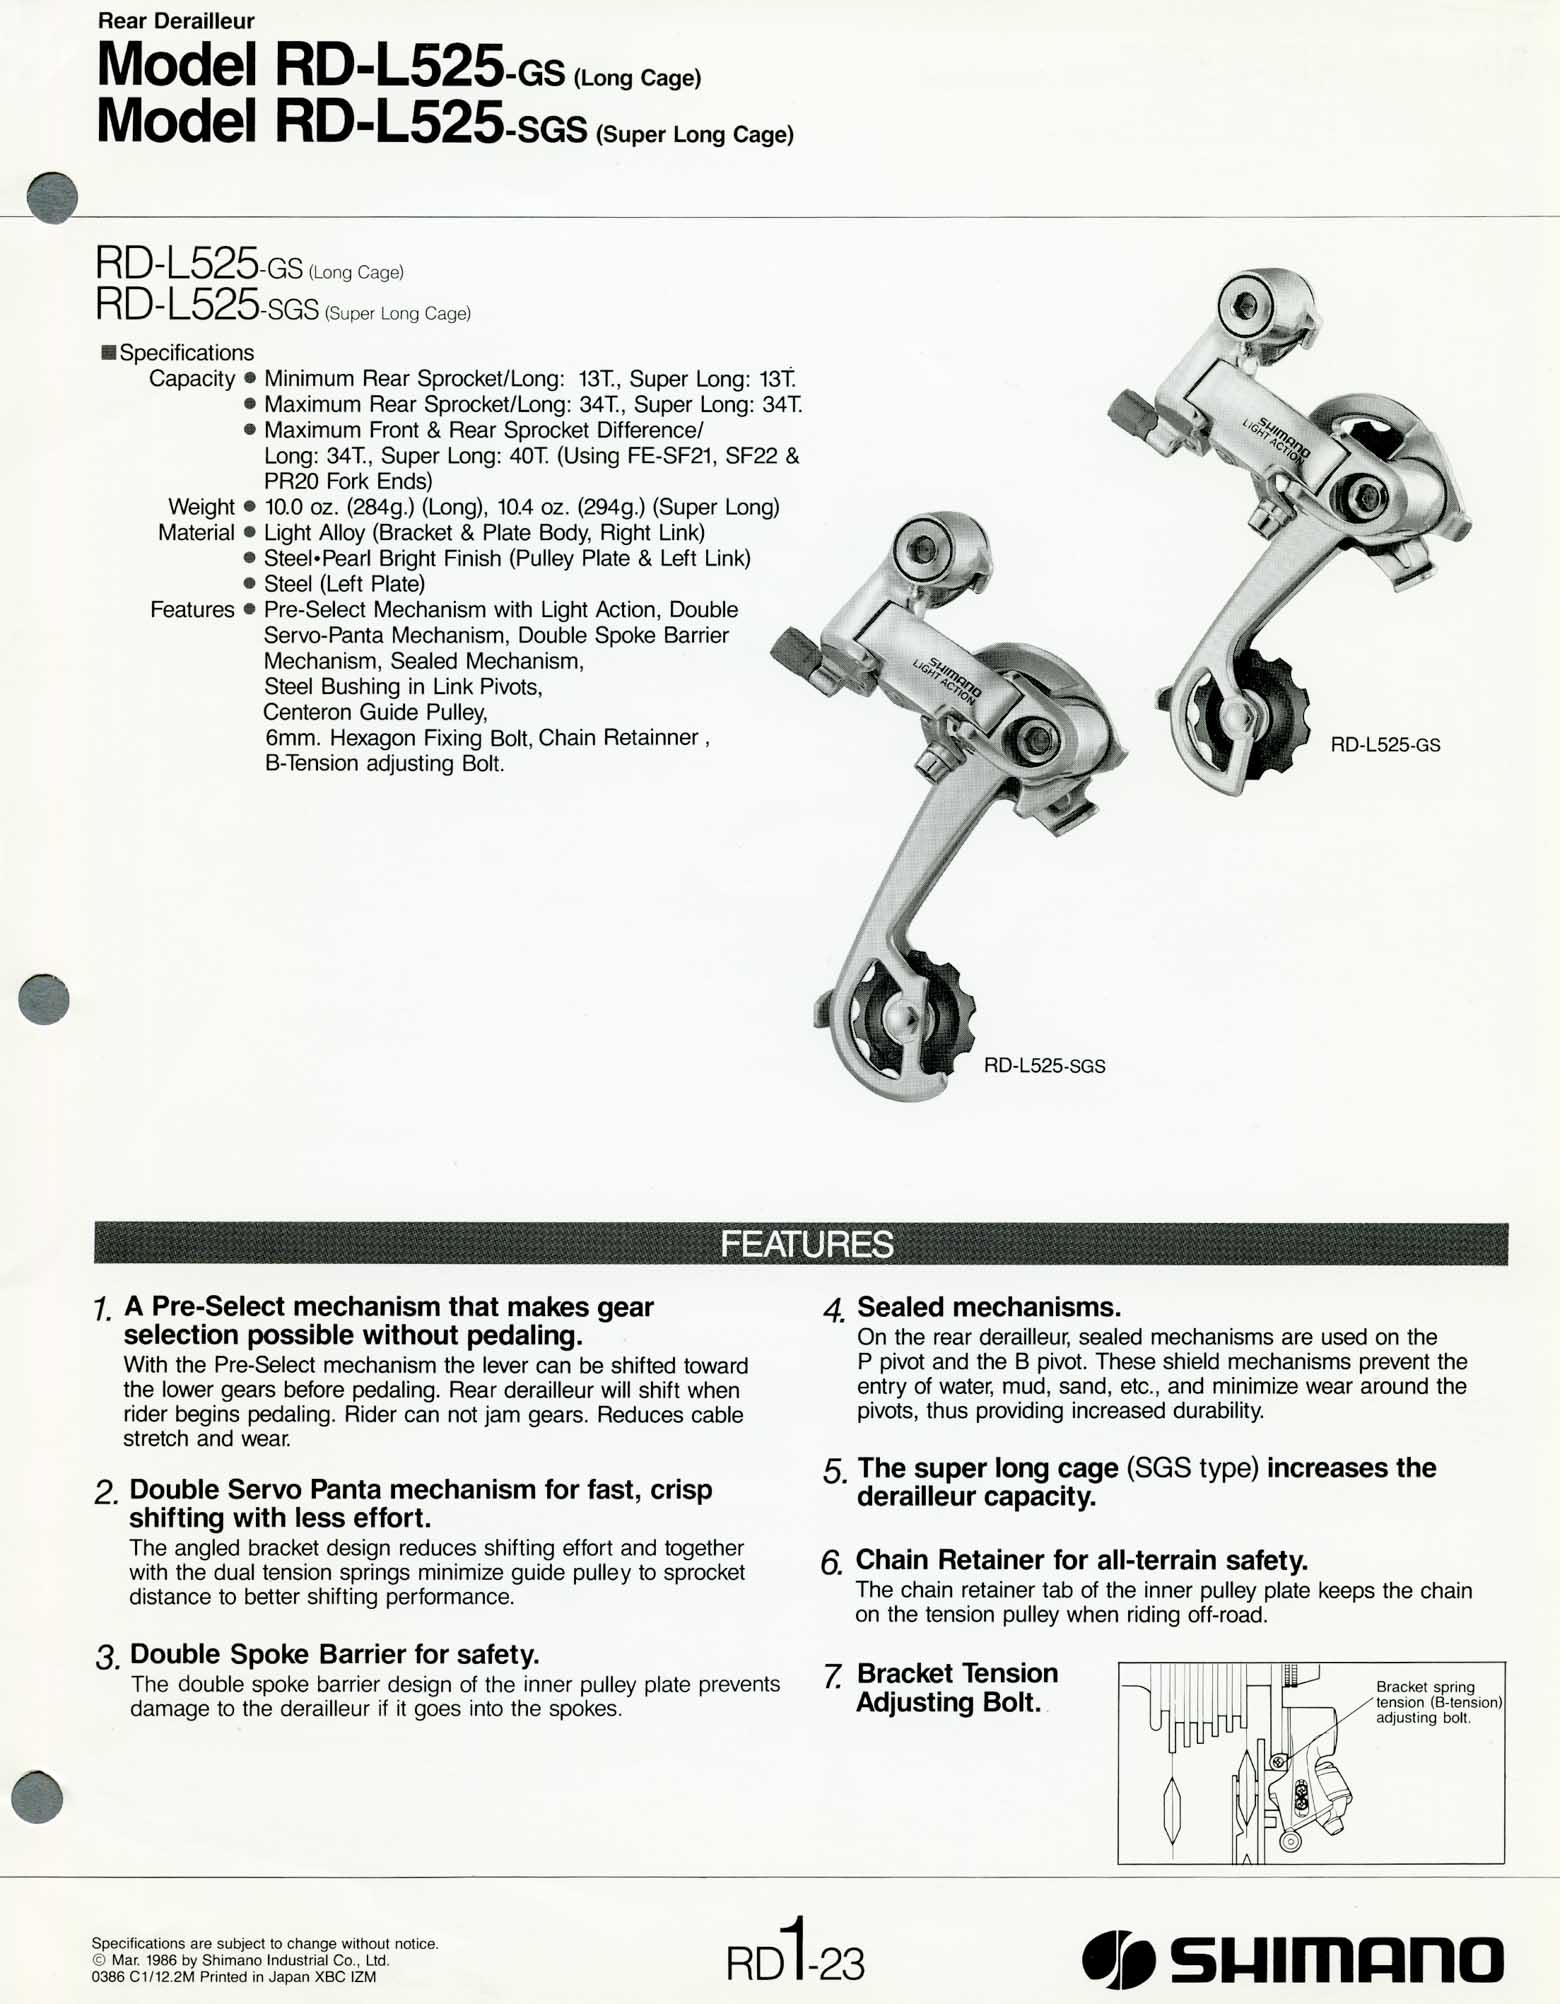 Shimano Bicycle Parts - 1986 scan 07 main image